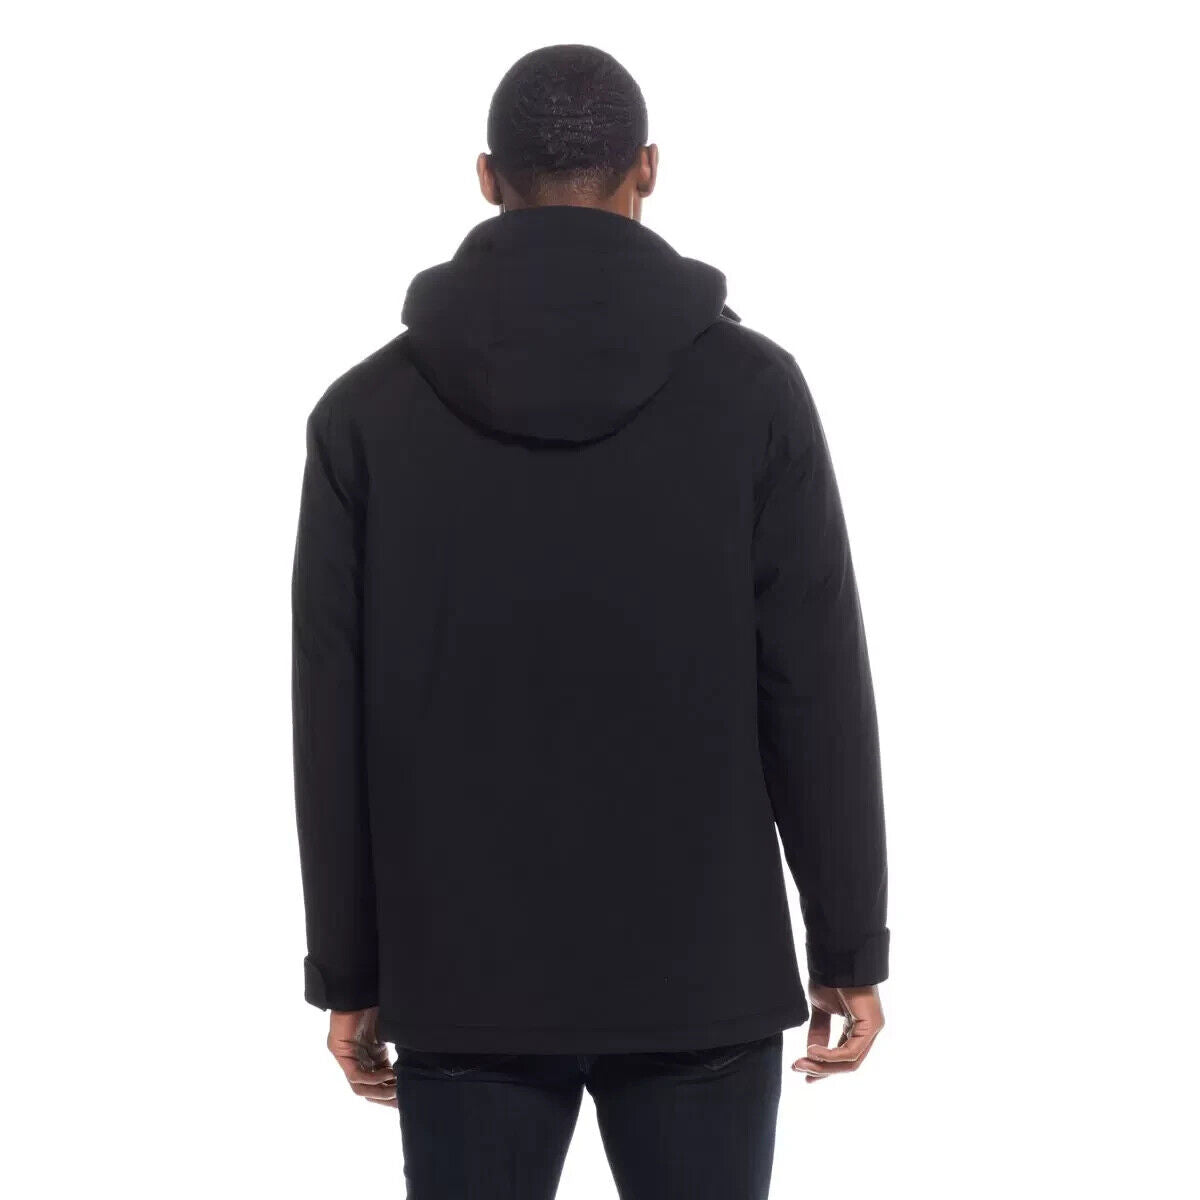 Weatherproof Men's Ultra Tech Flextech Jacket in Black, size M